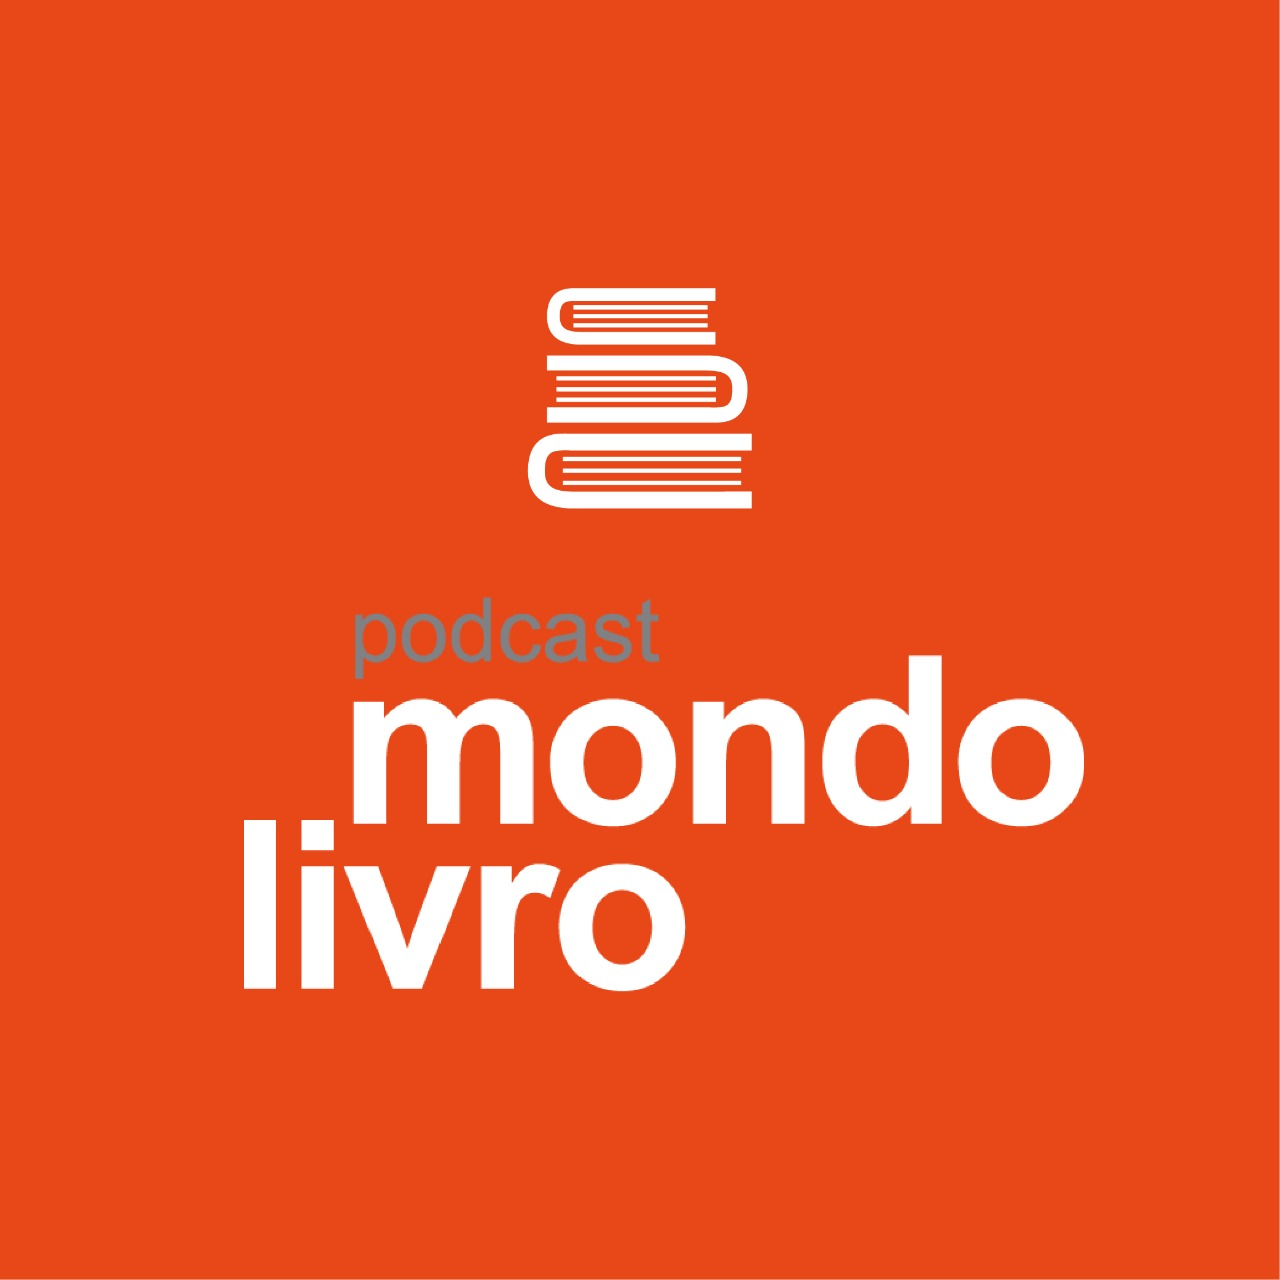 Mondolivro Podcast - 20min de papo com Valter Hugo Mãe sobre "As doenças do Brasil"